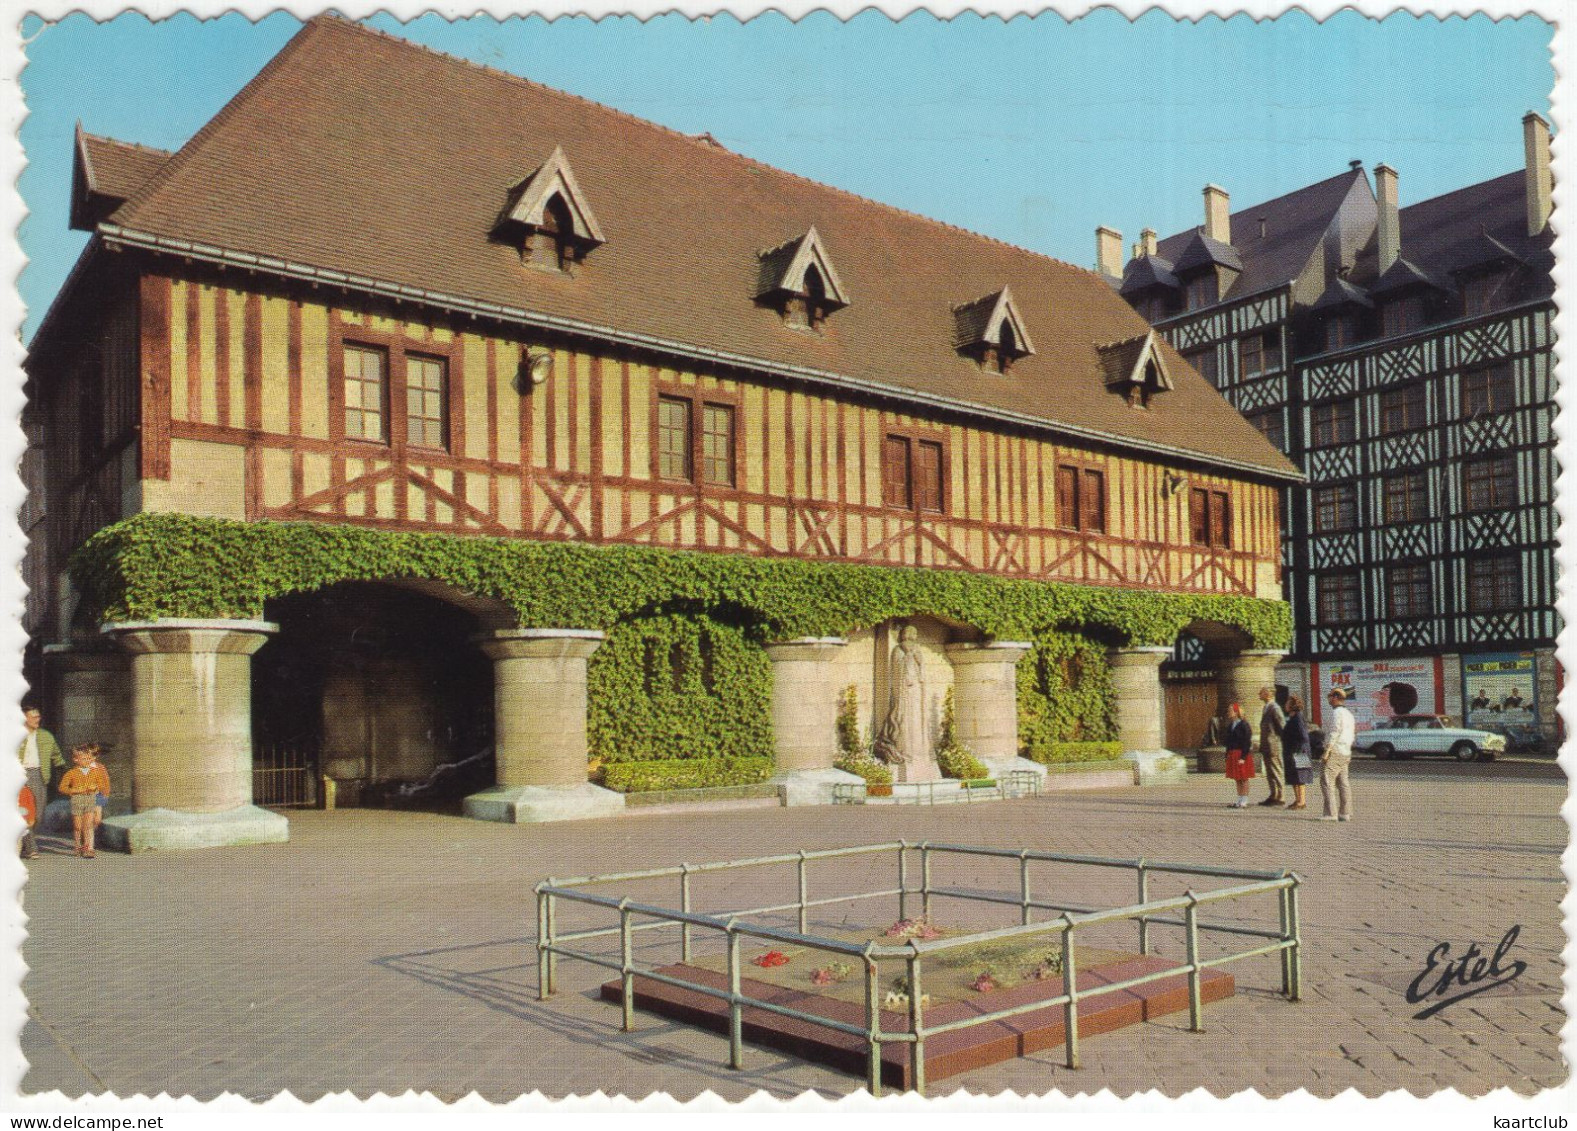 Rouen: SIMCA ARONDE P60 MONACO - La Place Du Marché, Statue Jeanne D'Arc - (France) - 1966 - PKW